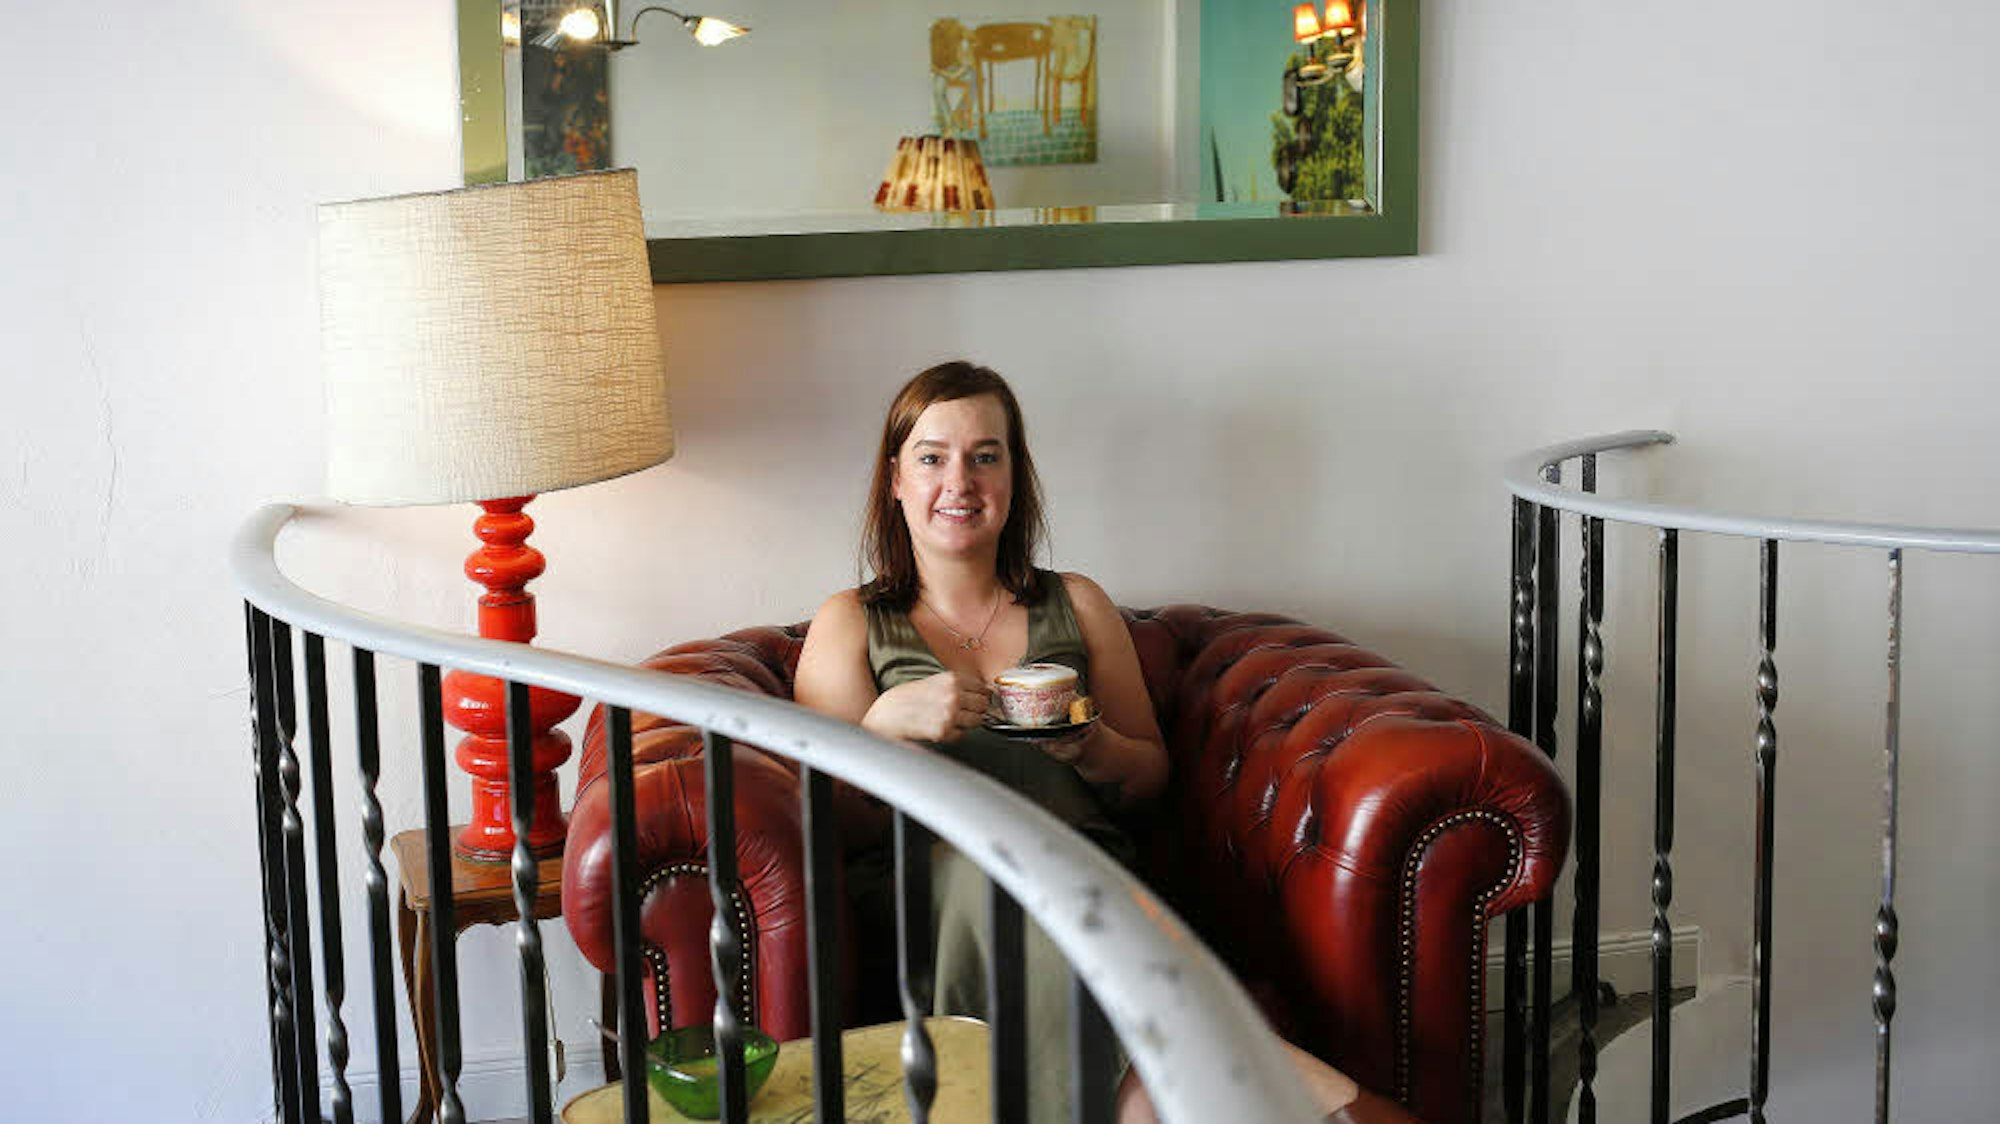 Julia Floß in der Leuchte Kaffeebar in Köln, sie sitzt in einem roten Retro-Sessel und hält eine Kaffeetasse.